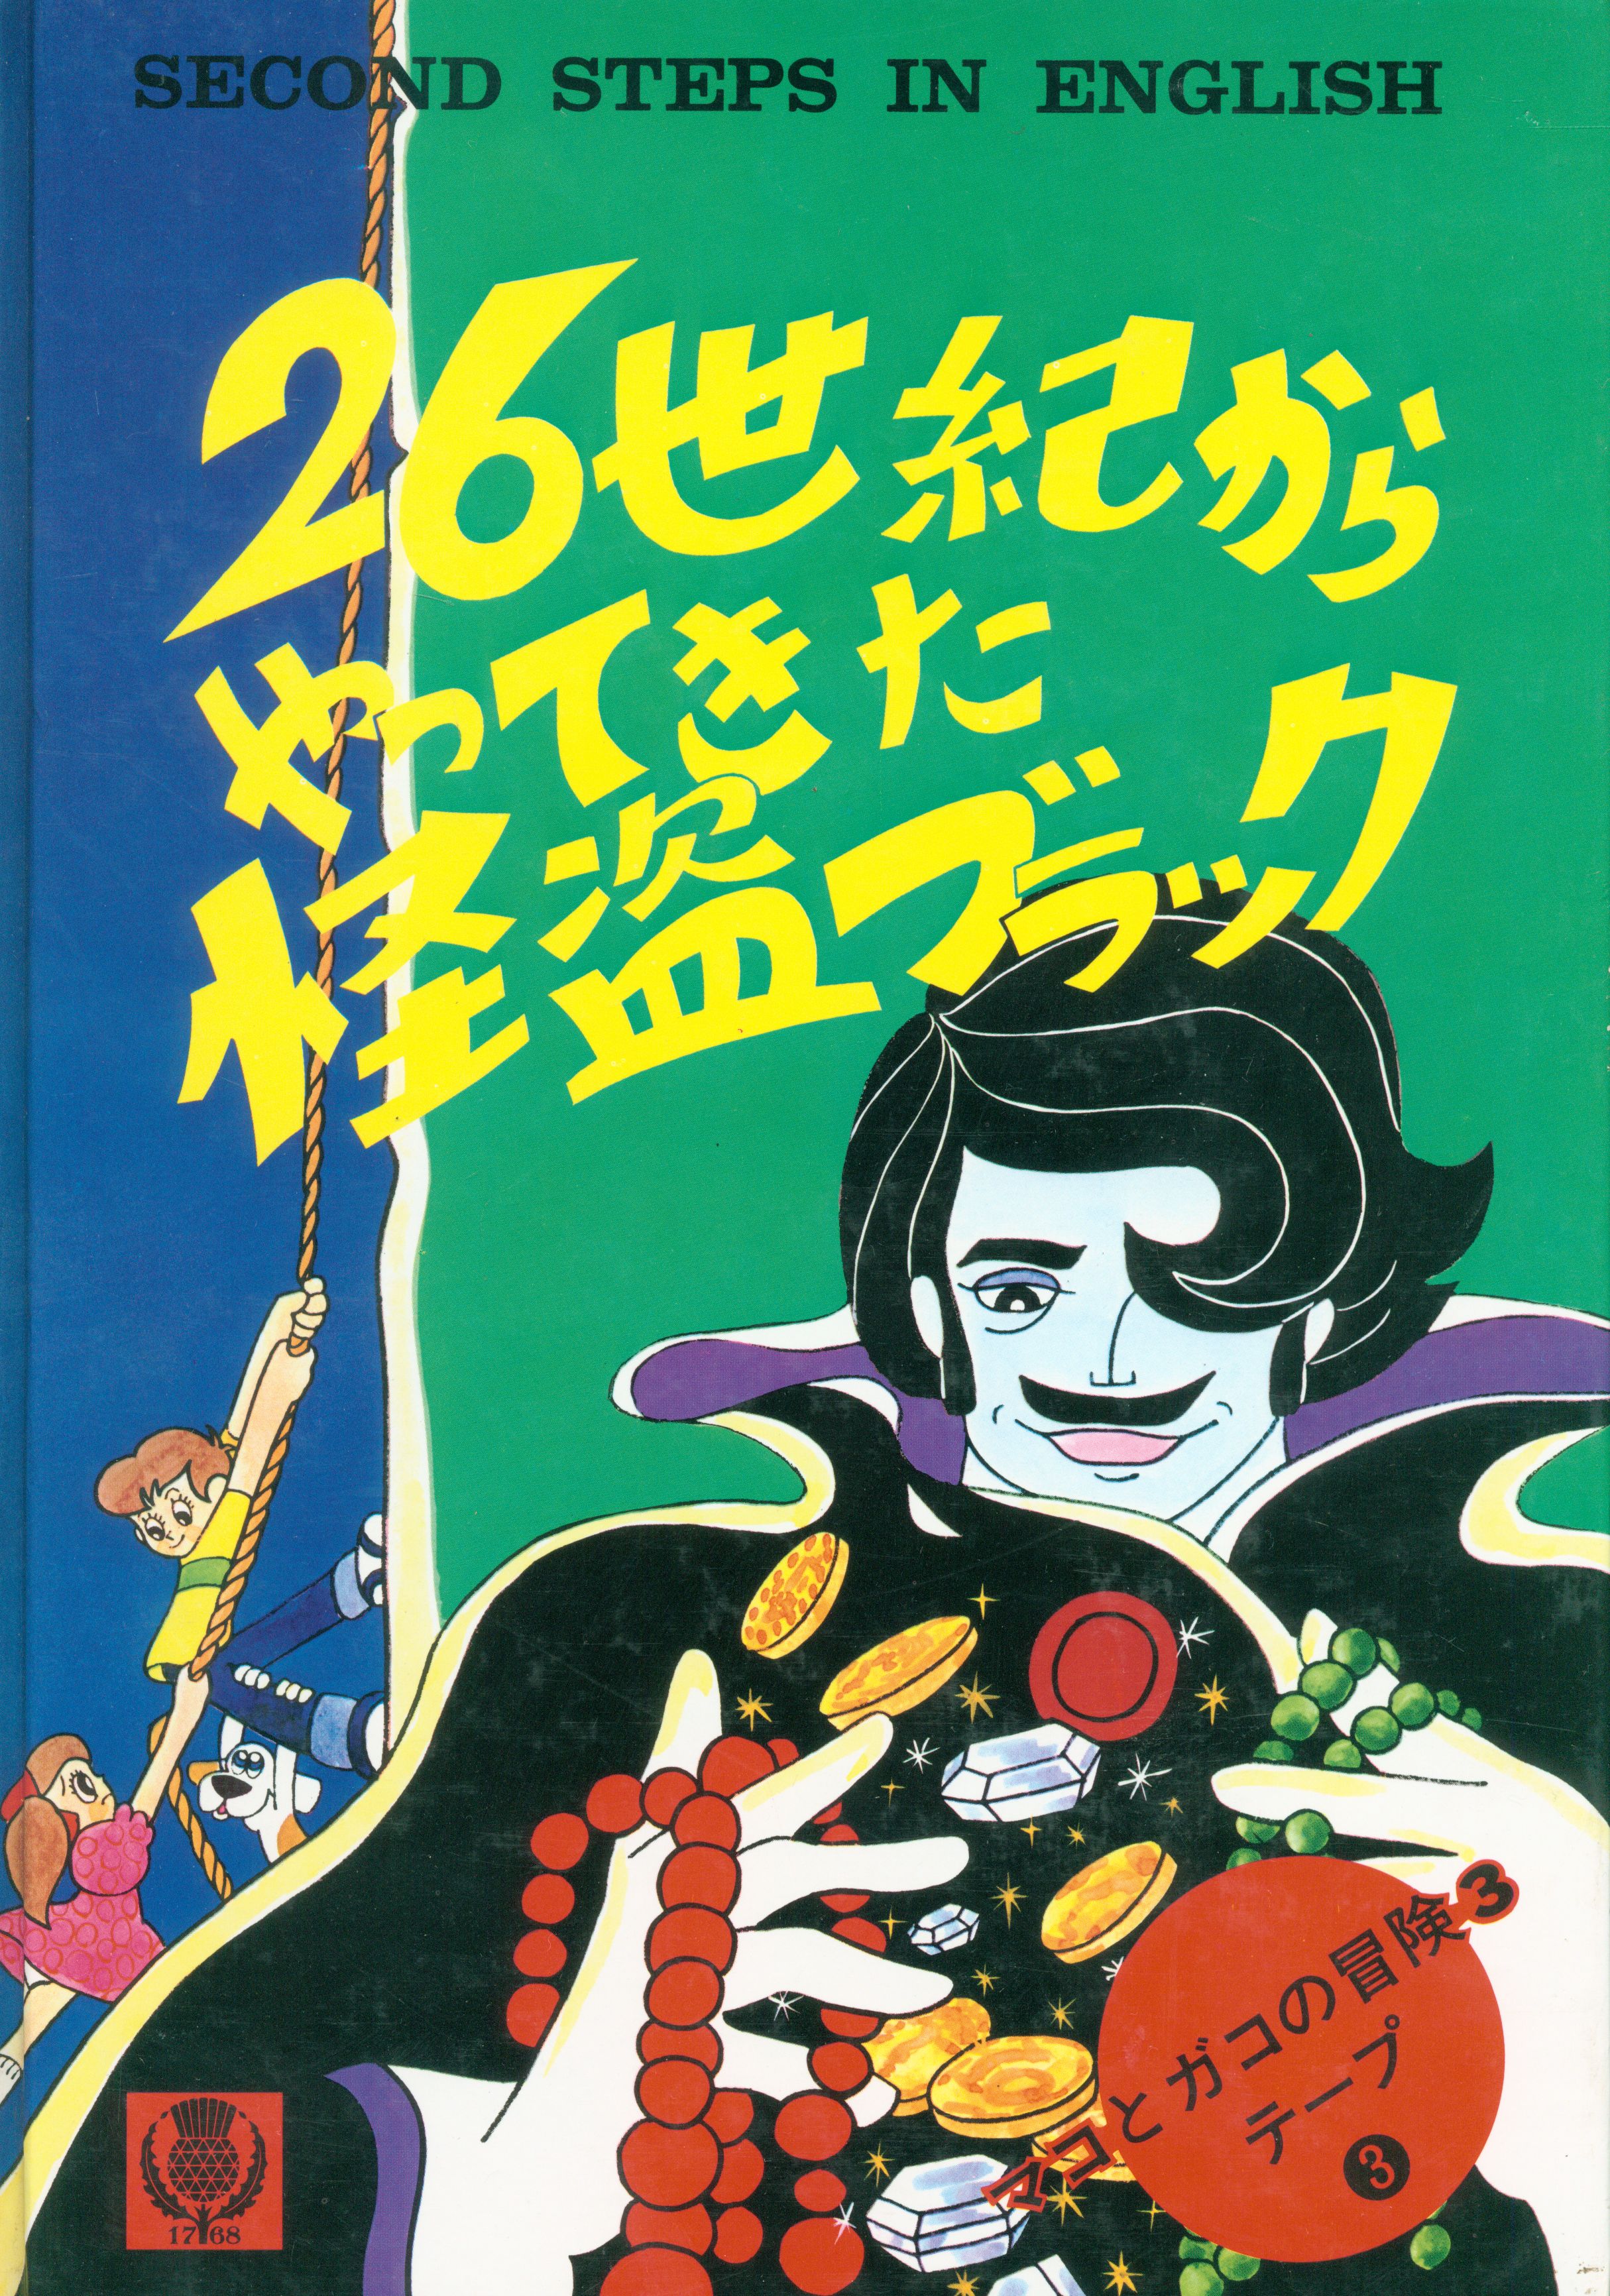 日本人気超絶の  ENGLISH　デジタル絵本「マコとガコの冒険」 IN STEPS SECOND その他